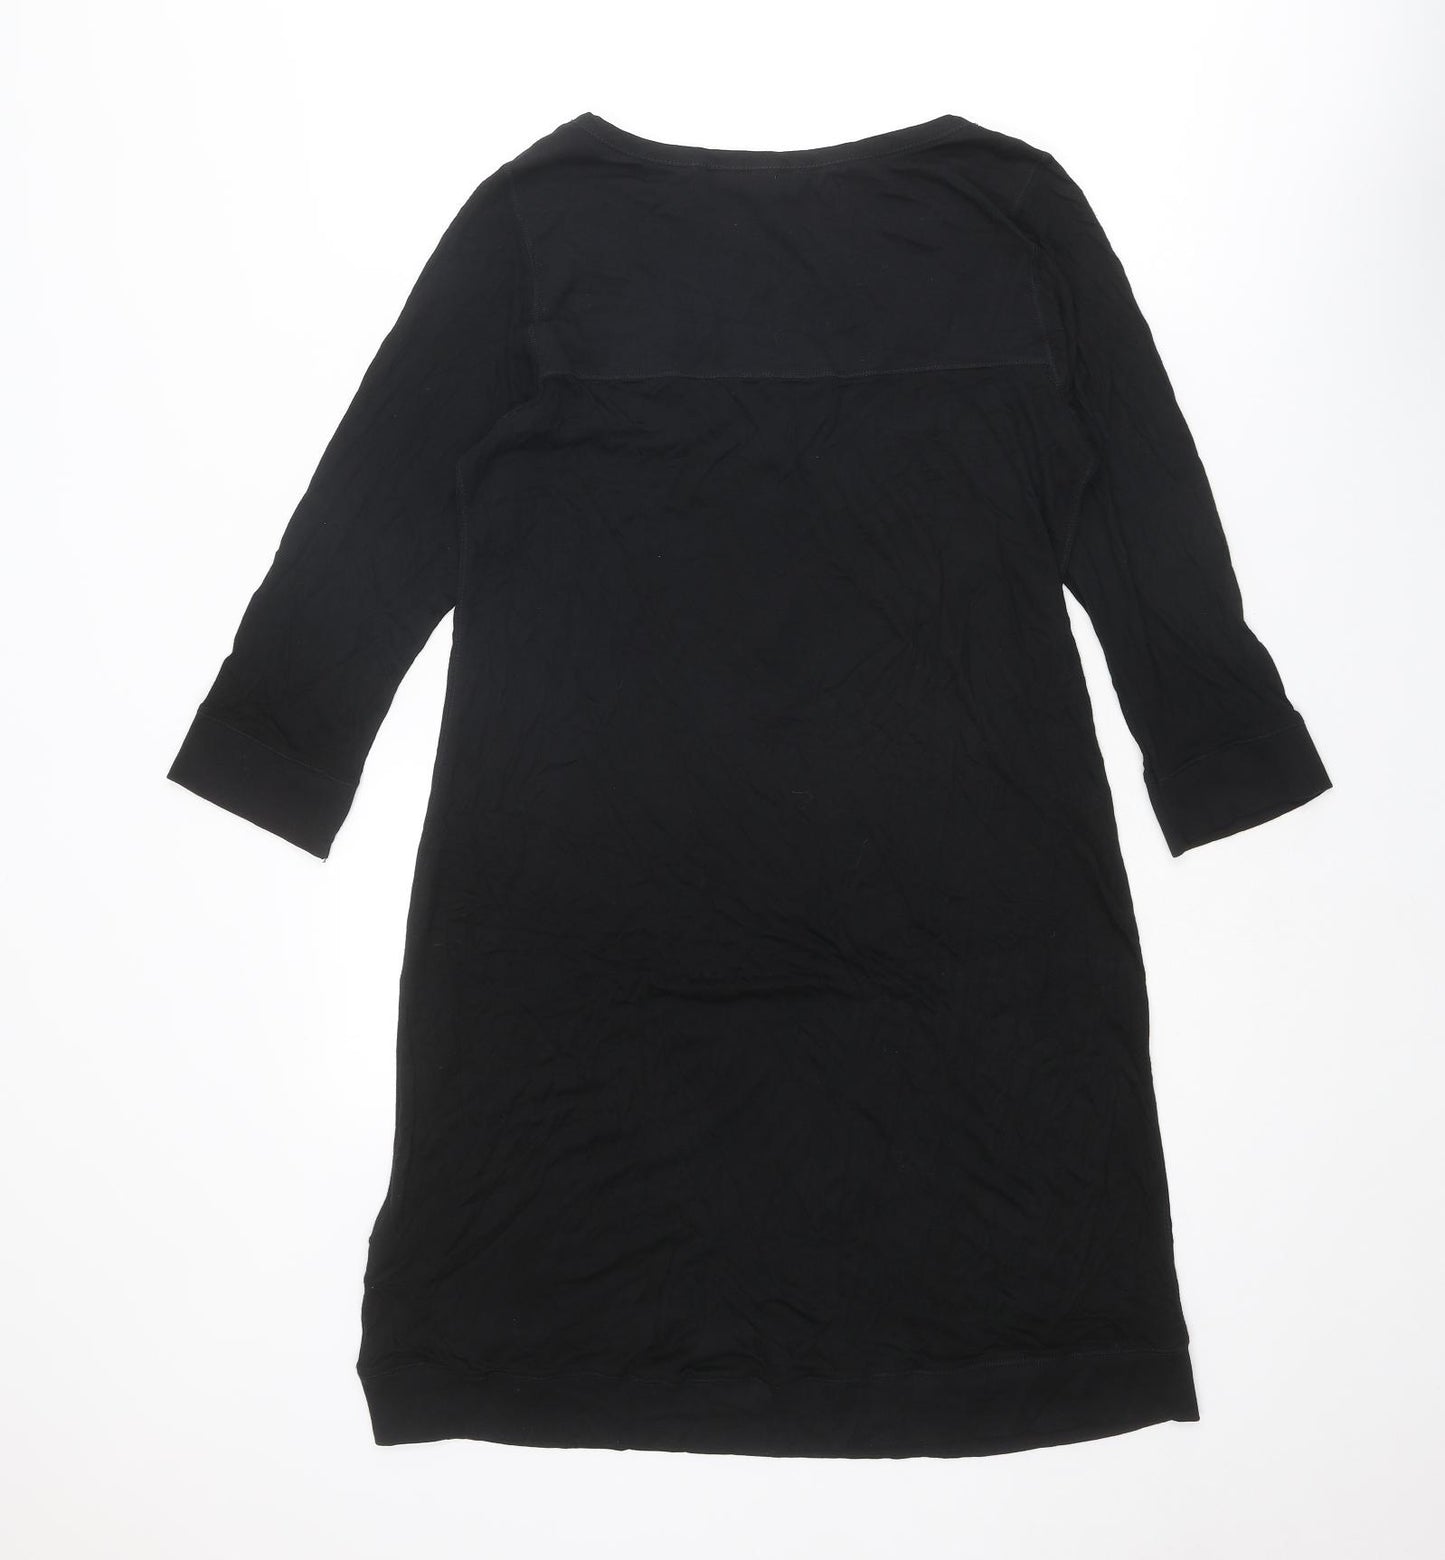 H&M Womens Black Viscose A-Line Size M Scoop Neck Button